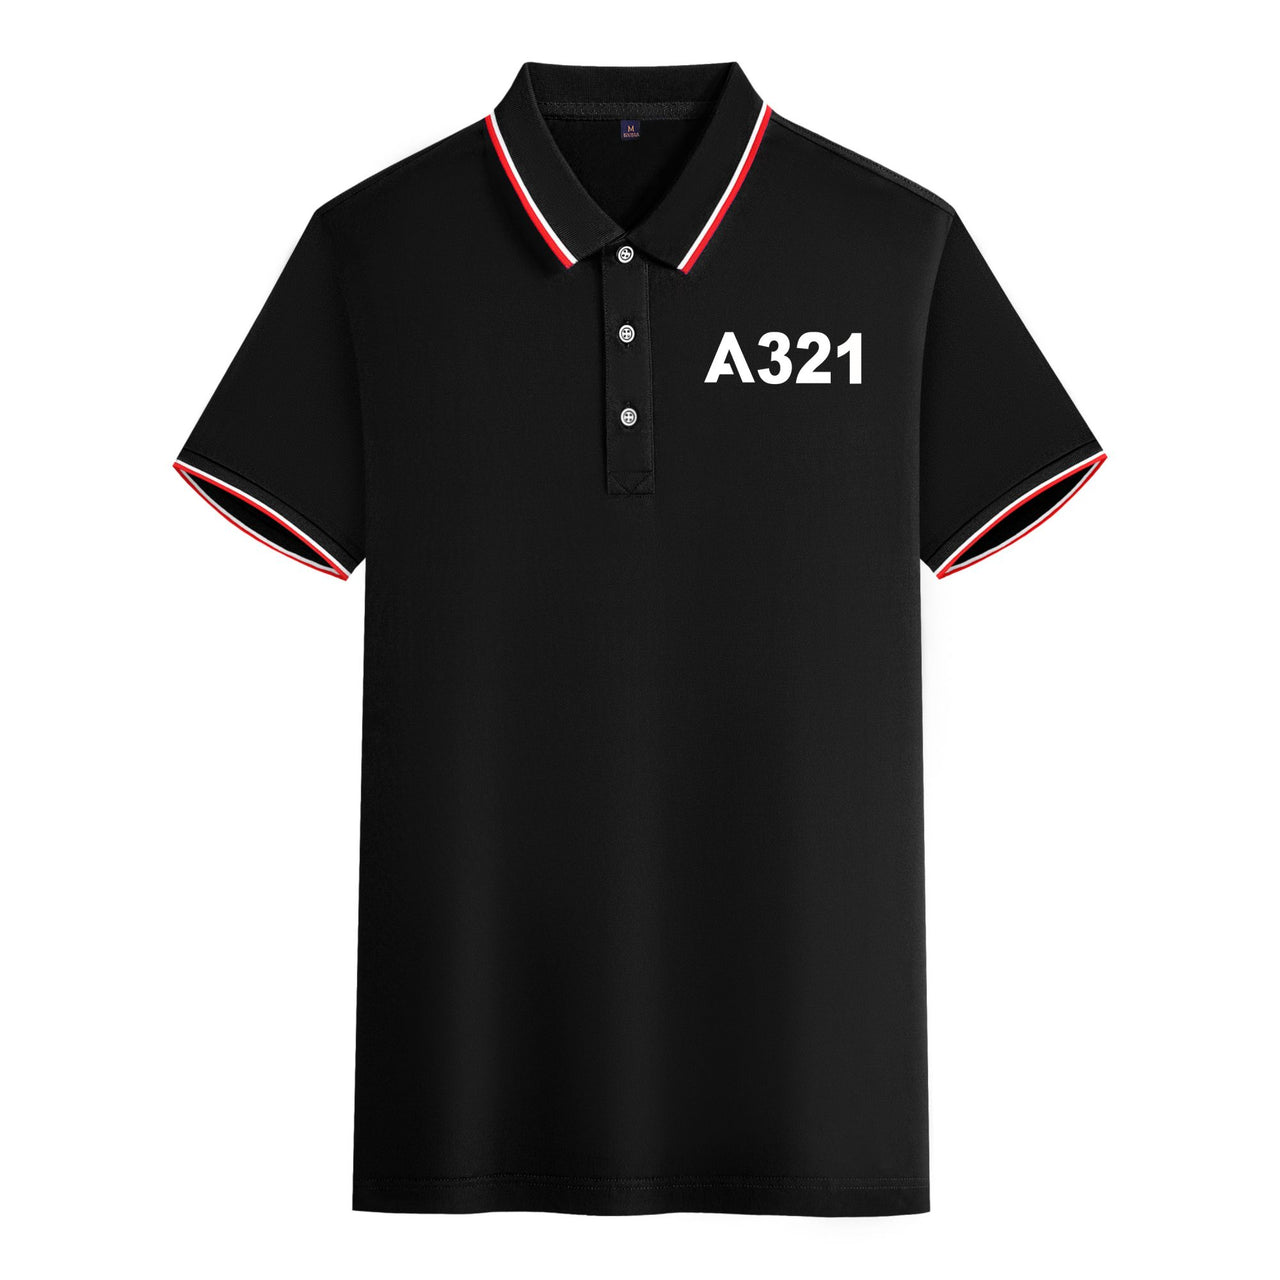 A321 Flat Text Designed Stylish Polo T-Shirts